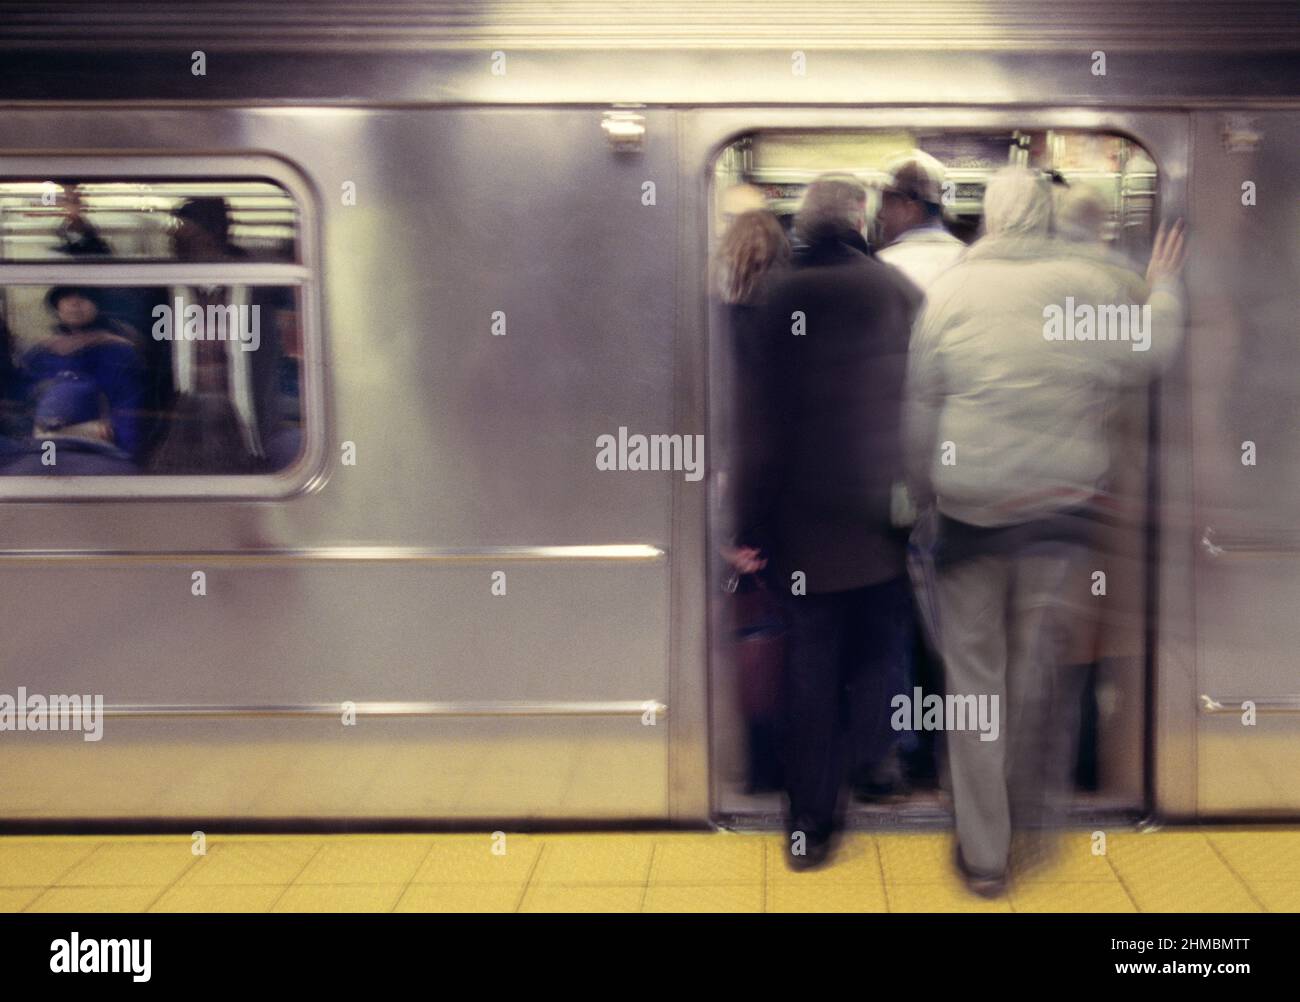 Abfahrt der U-Bahn-Überfüllung. Öffentliche Verkehrsmittel der New York City Transit Authority zur Hauptverkehrszeit. Öffnen Sie die Tür der U-Bahn. Stockfoto